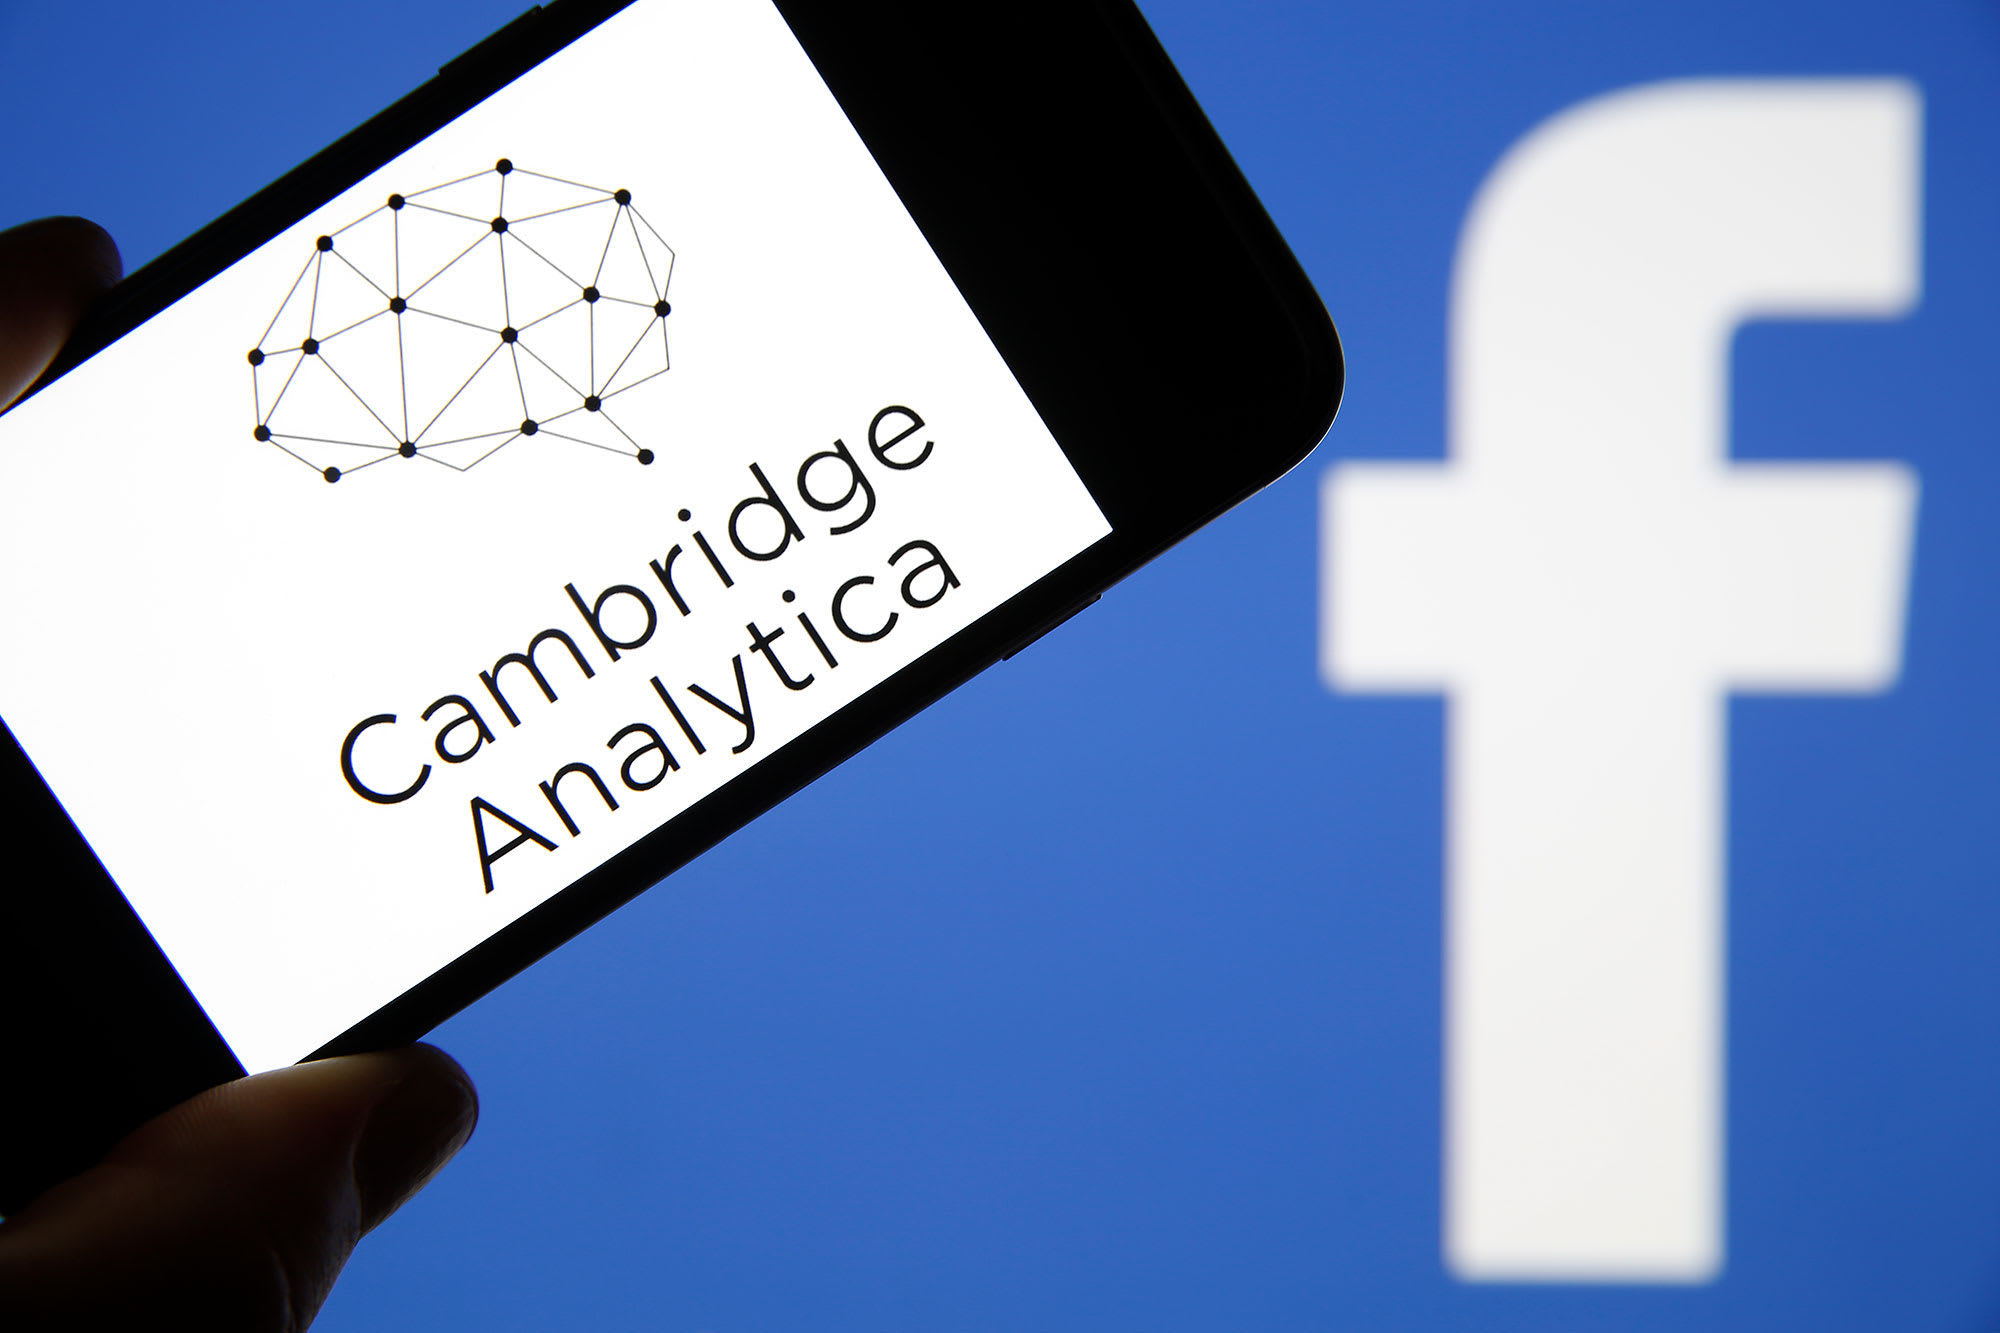 facebook cambridge analytica data scandal case study